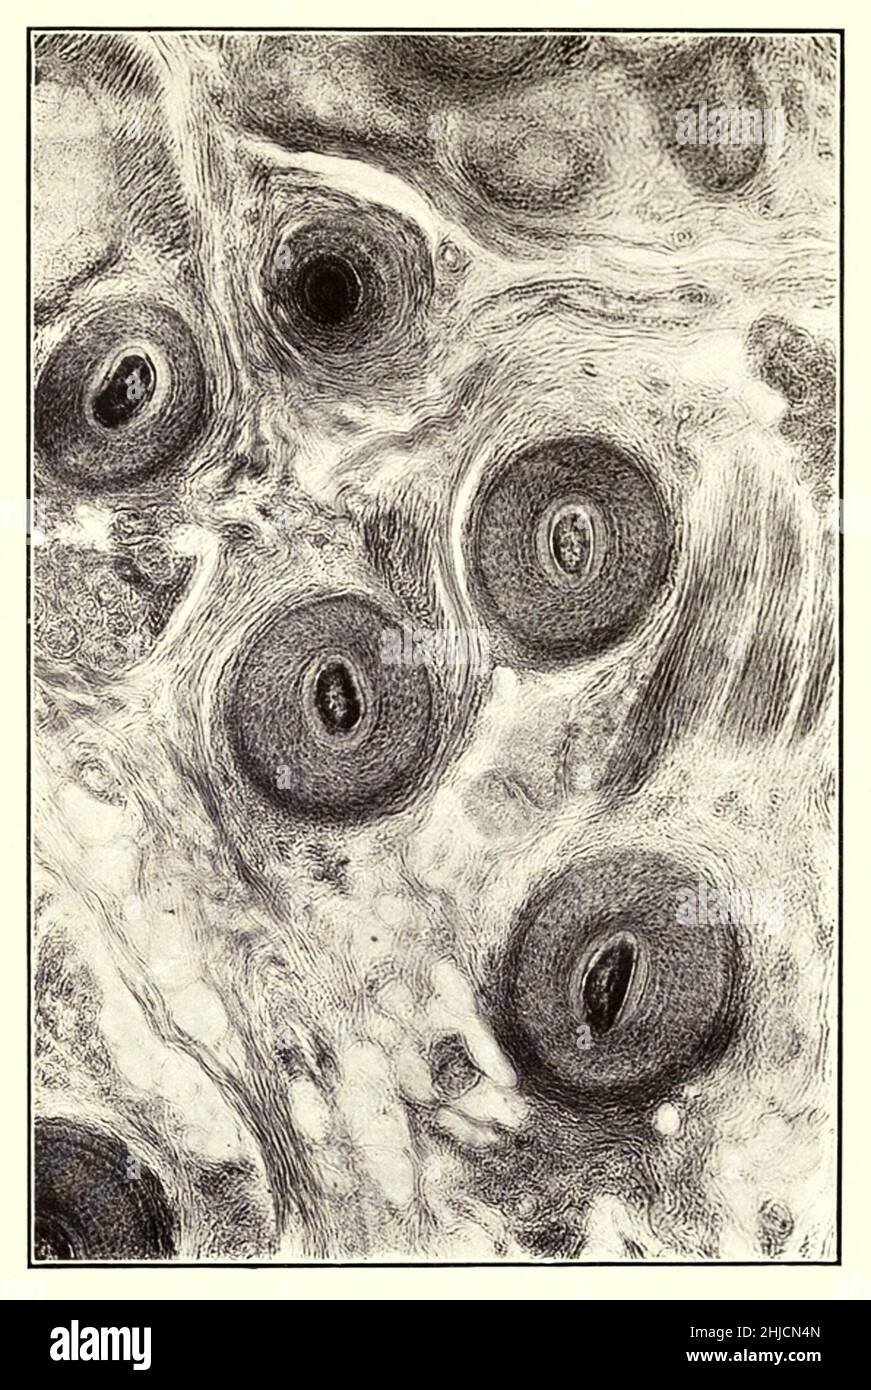 Querschnitt der menschlichen Kopfhaut. Vergrößerung: 100x. Fotomikrograph von Arthur E Smith in den frühen 1900er Jahren, mit einem kombinierten Mikroskop und Kamera. 1904 stellte die Royal Society in London eine Reihe von Smiths Fotomikrographen der Öffentlichkeit aus. Sie wurden später 1909 in einem Buch mit dem Titel "Nature Through Microscope & Camera" veröffentlicht. Sie waren die ersten Beispiele für die Photomikroskopie, die viele je gesehen hatten. Stockfoto